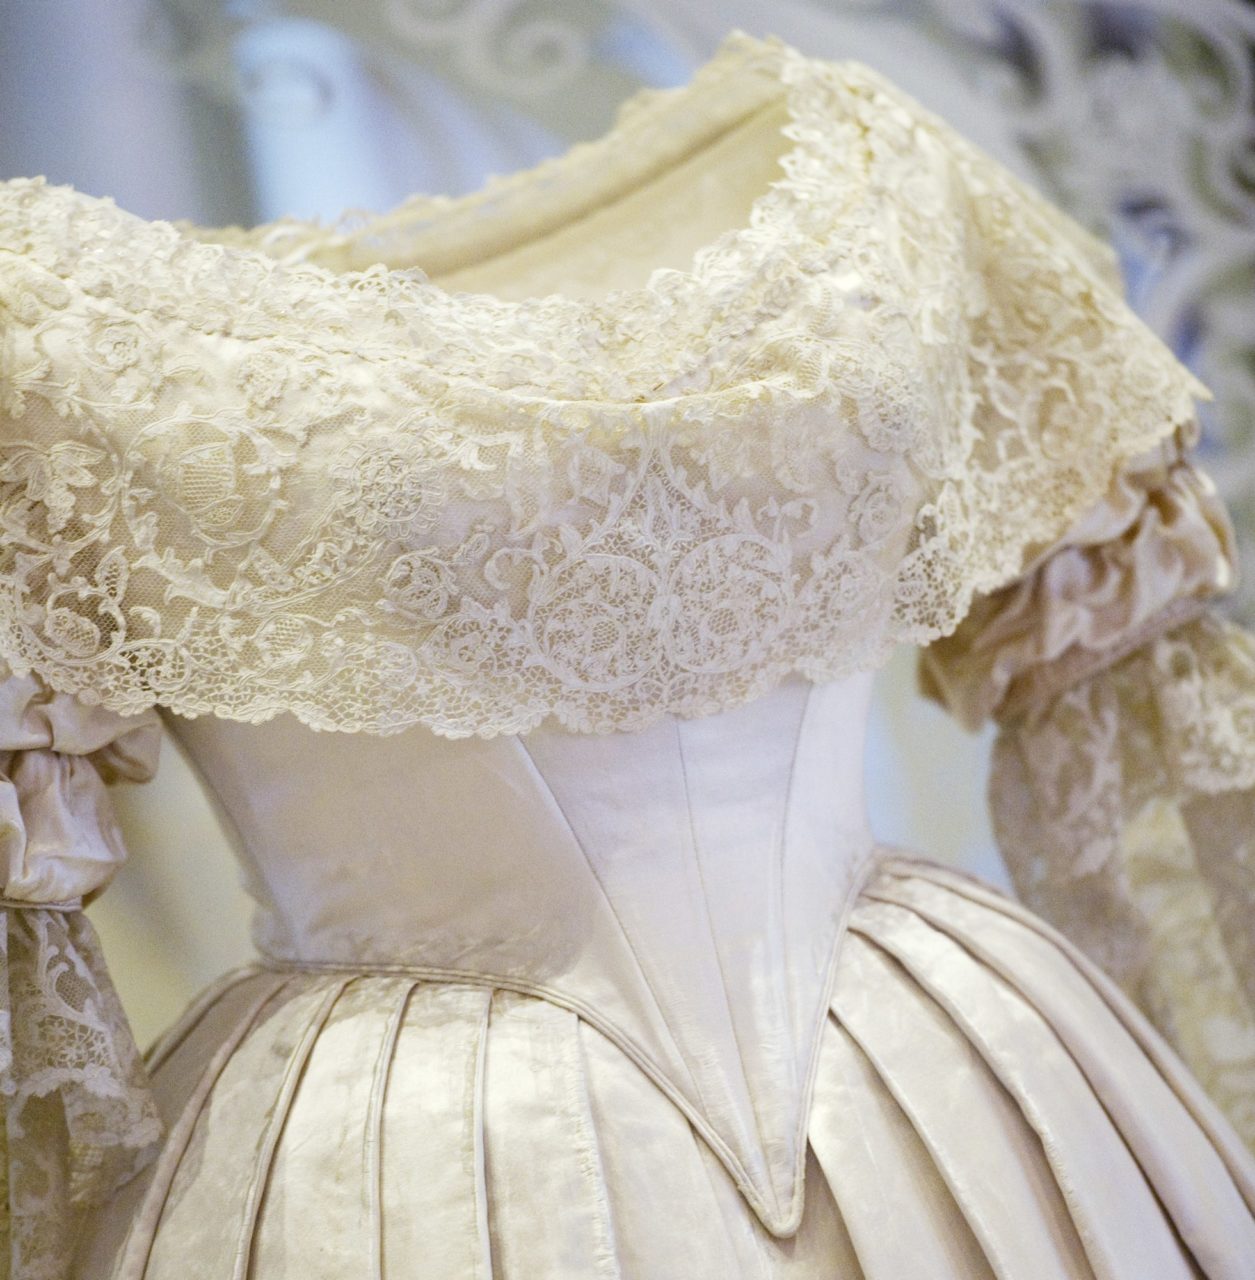 Queen Victoria's wedding dress